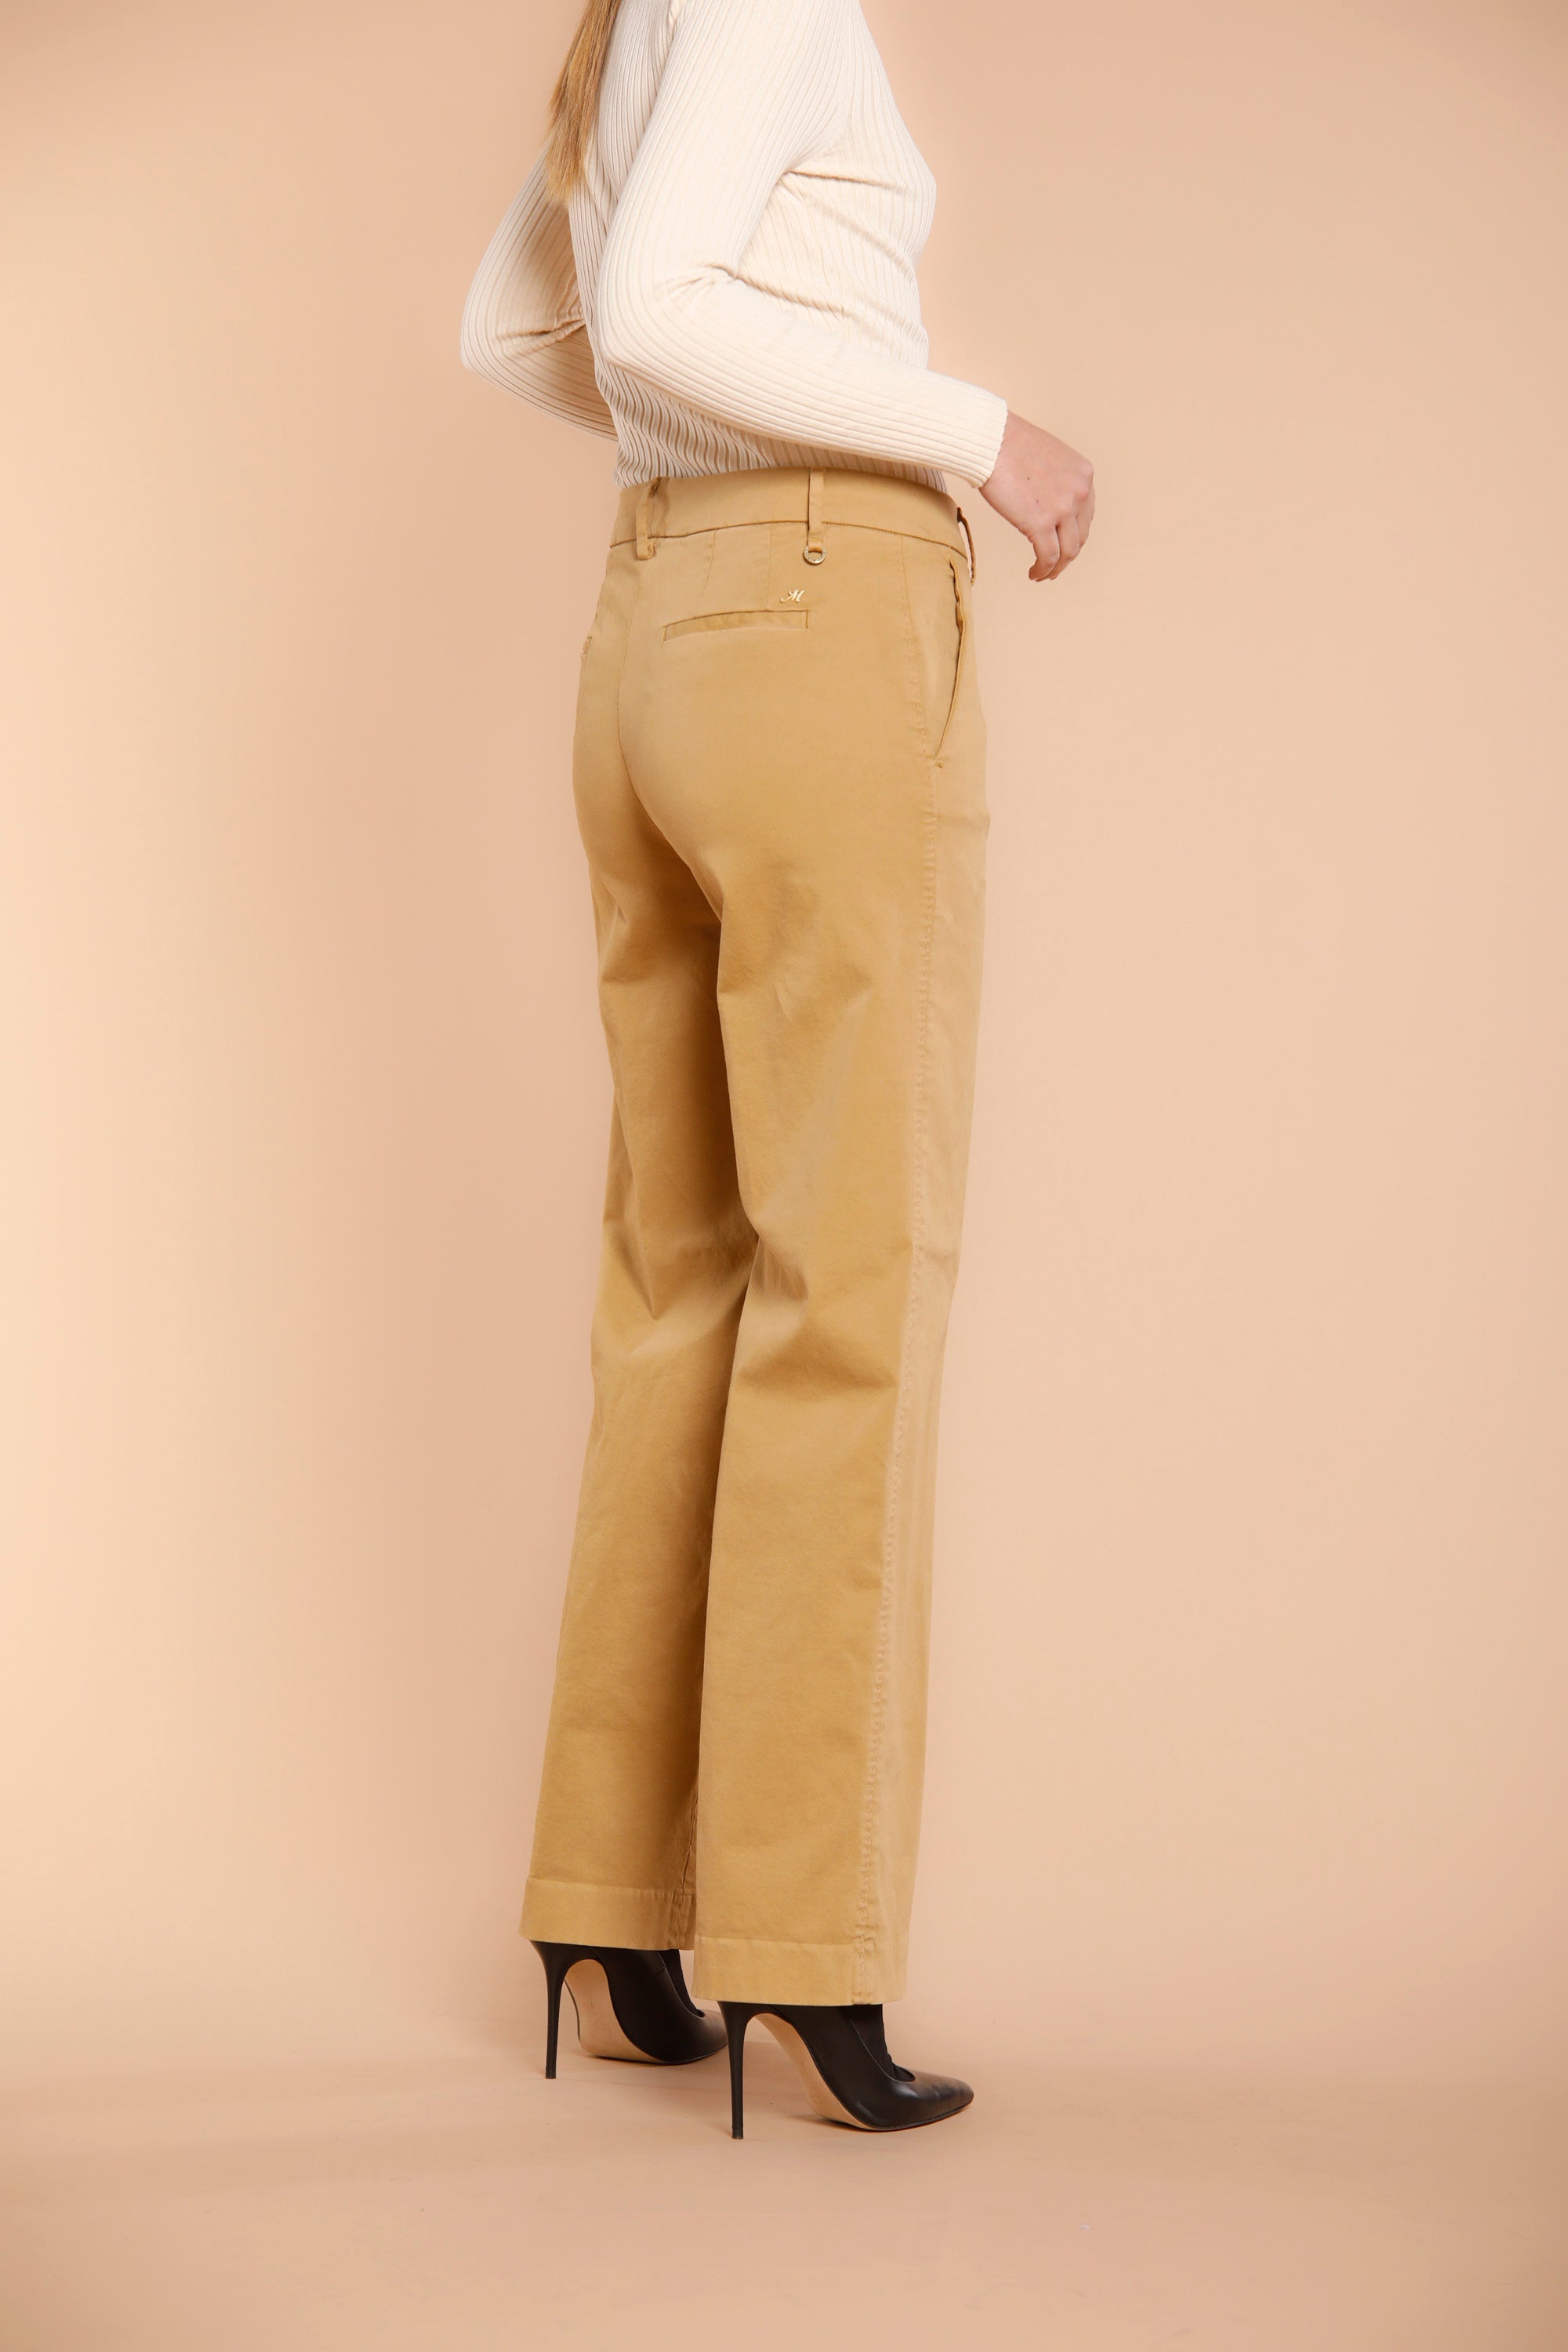 Image 4 du pantalon chino femme en satin couleur charpentier modèle New York Straight par Maosn's